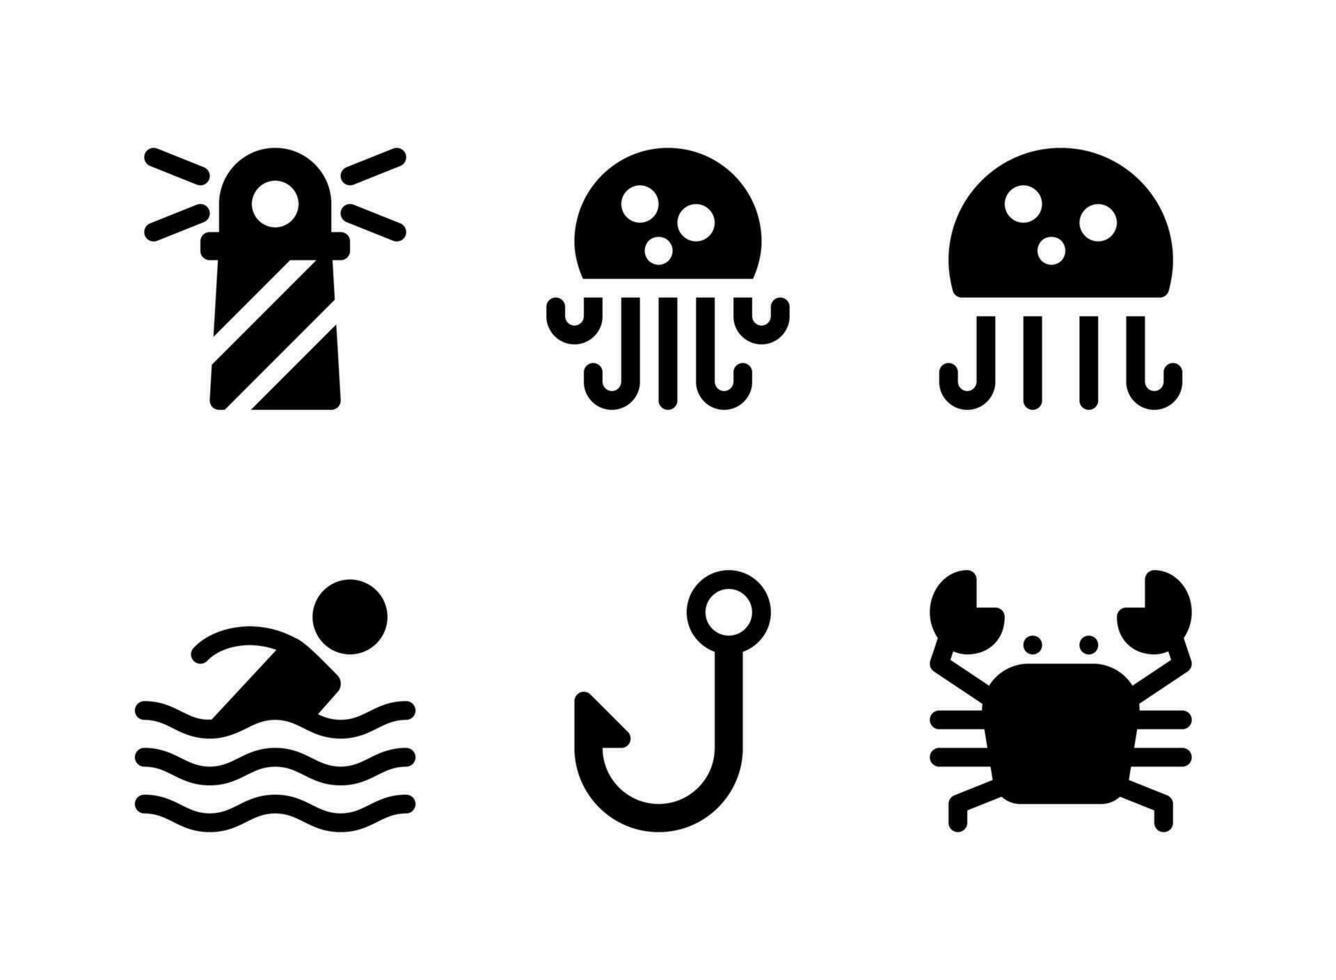 semplice set di icone solide vettoriali relative marittime